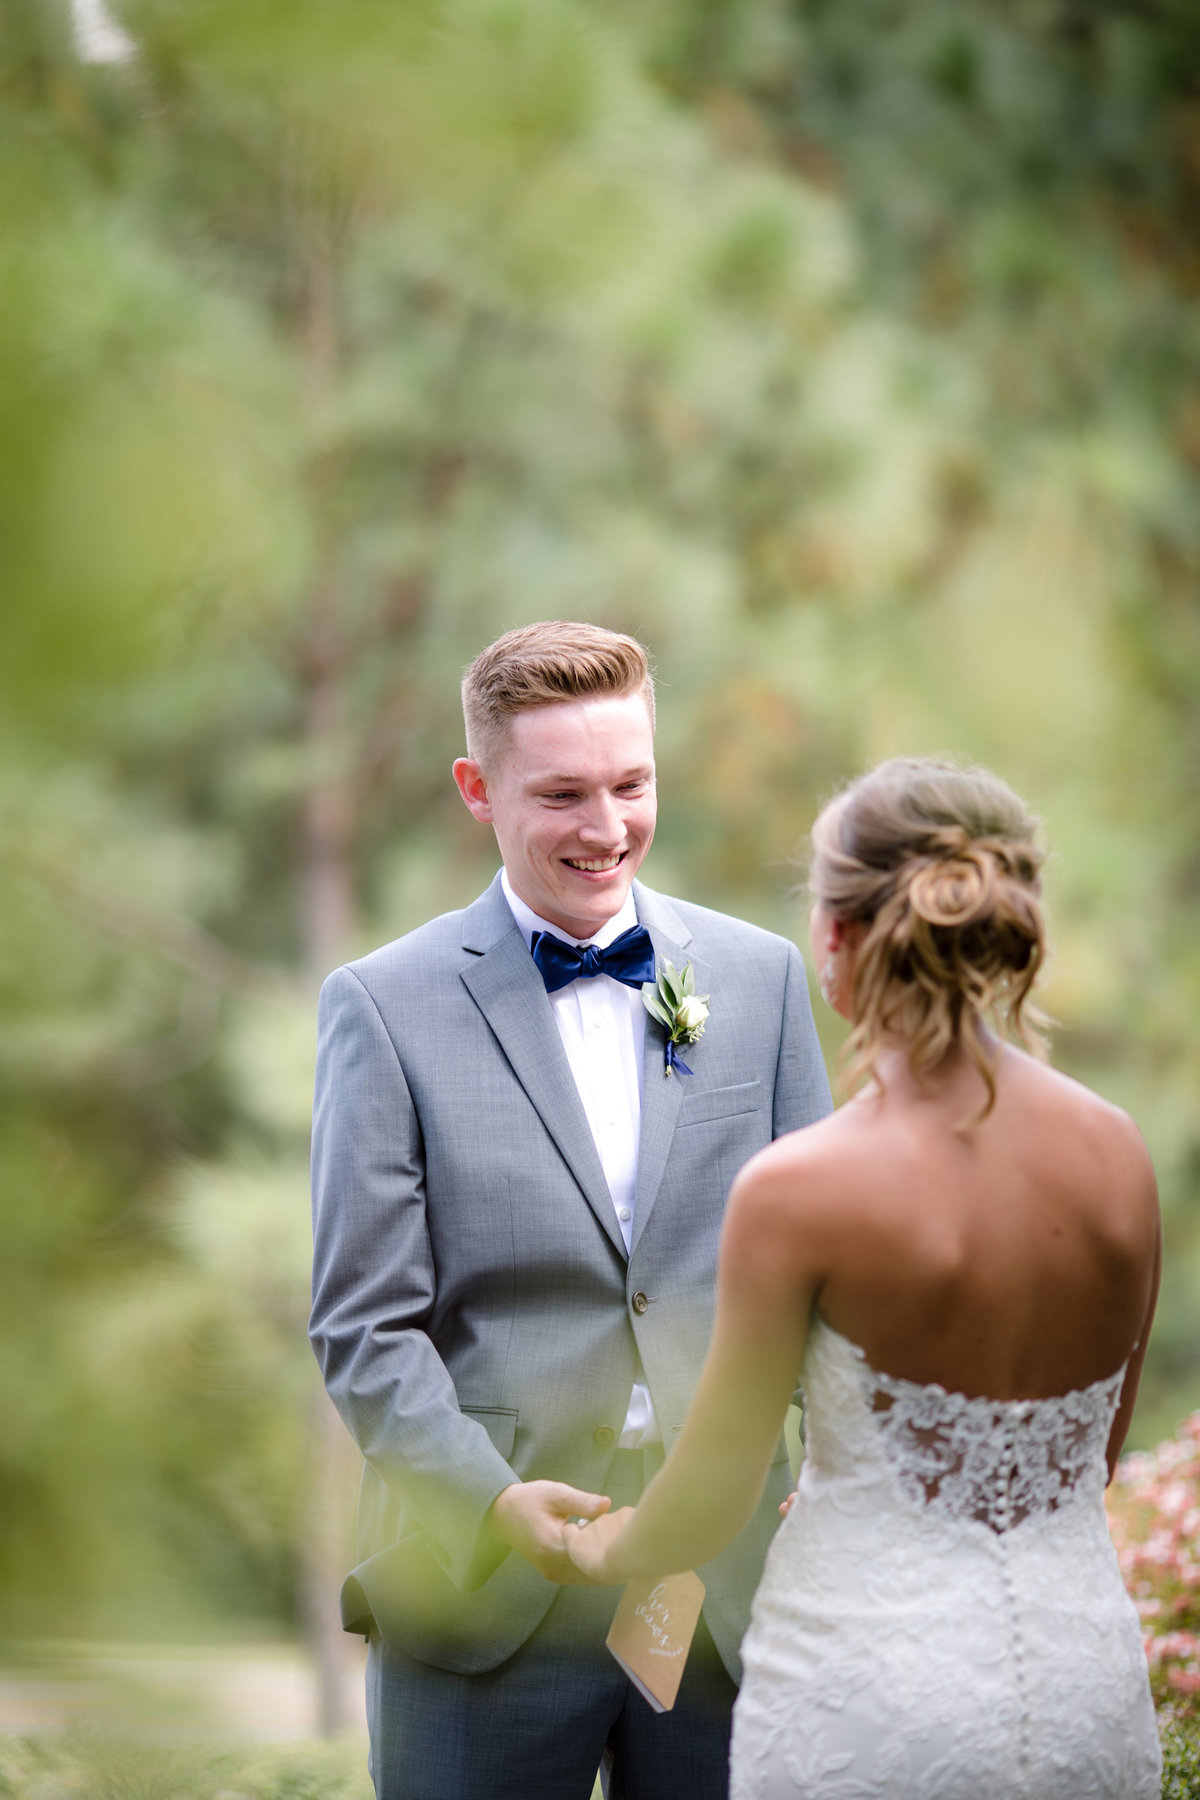 Photography by Tiffany - NC Wedding and Family Photographer - Pinehurst Arboretum Wedding - September 14, 2019 - 2-2